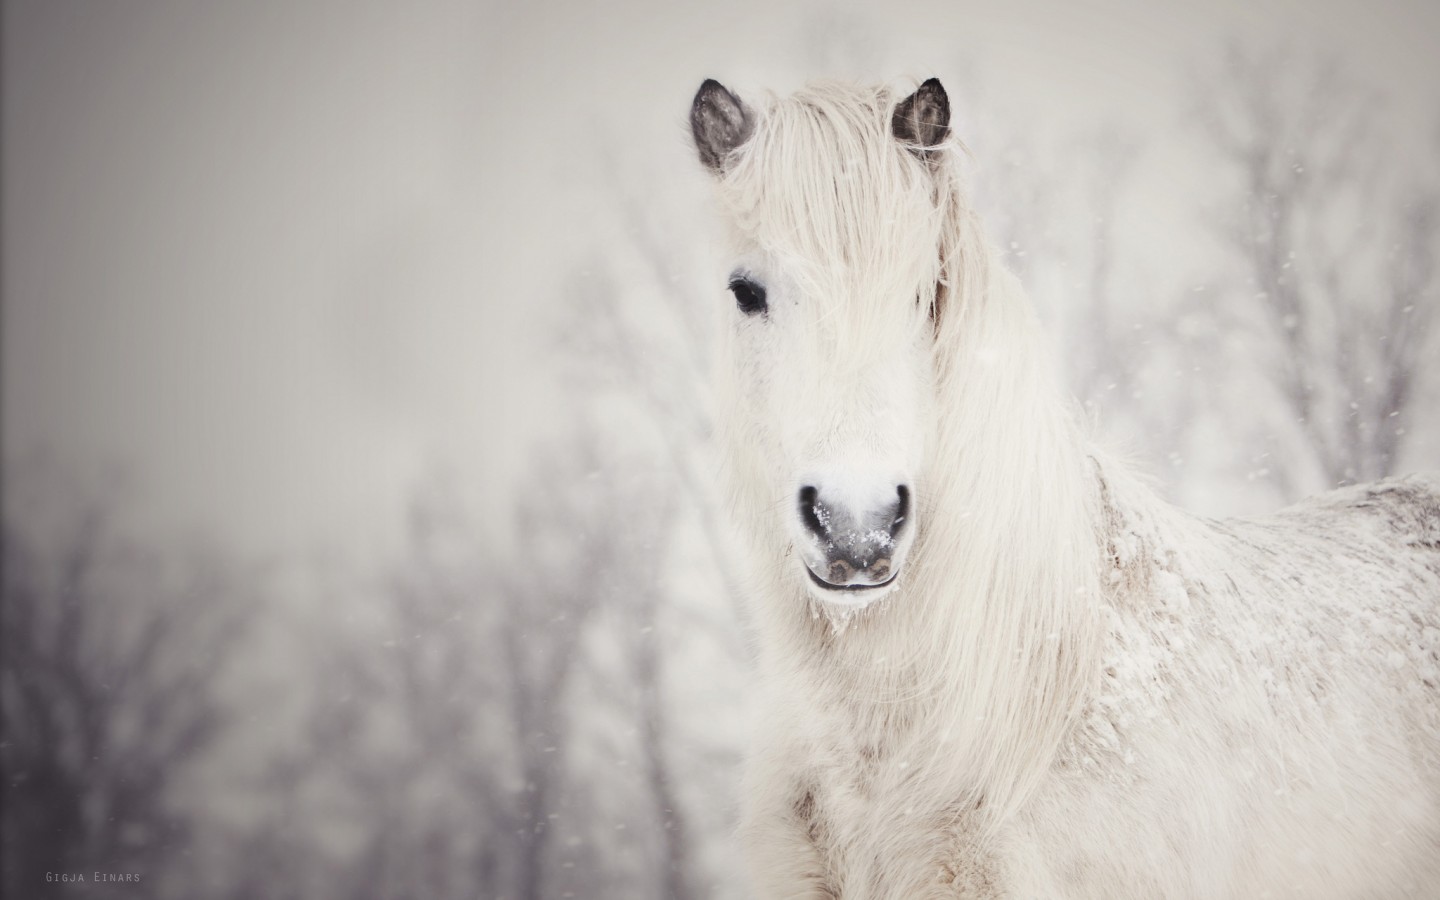 Dashing Through The Snow Horses Photo